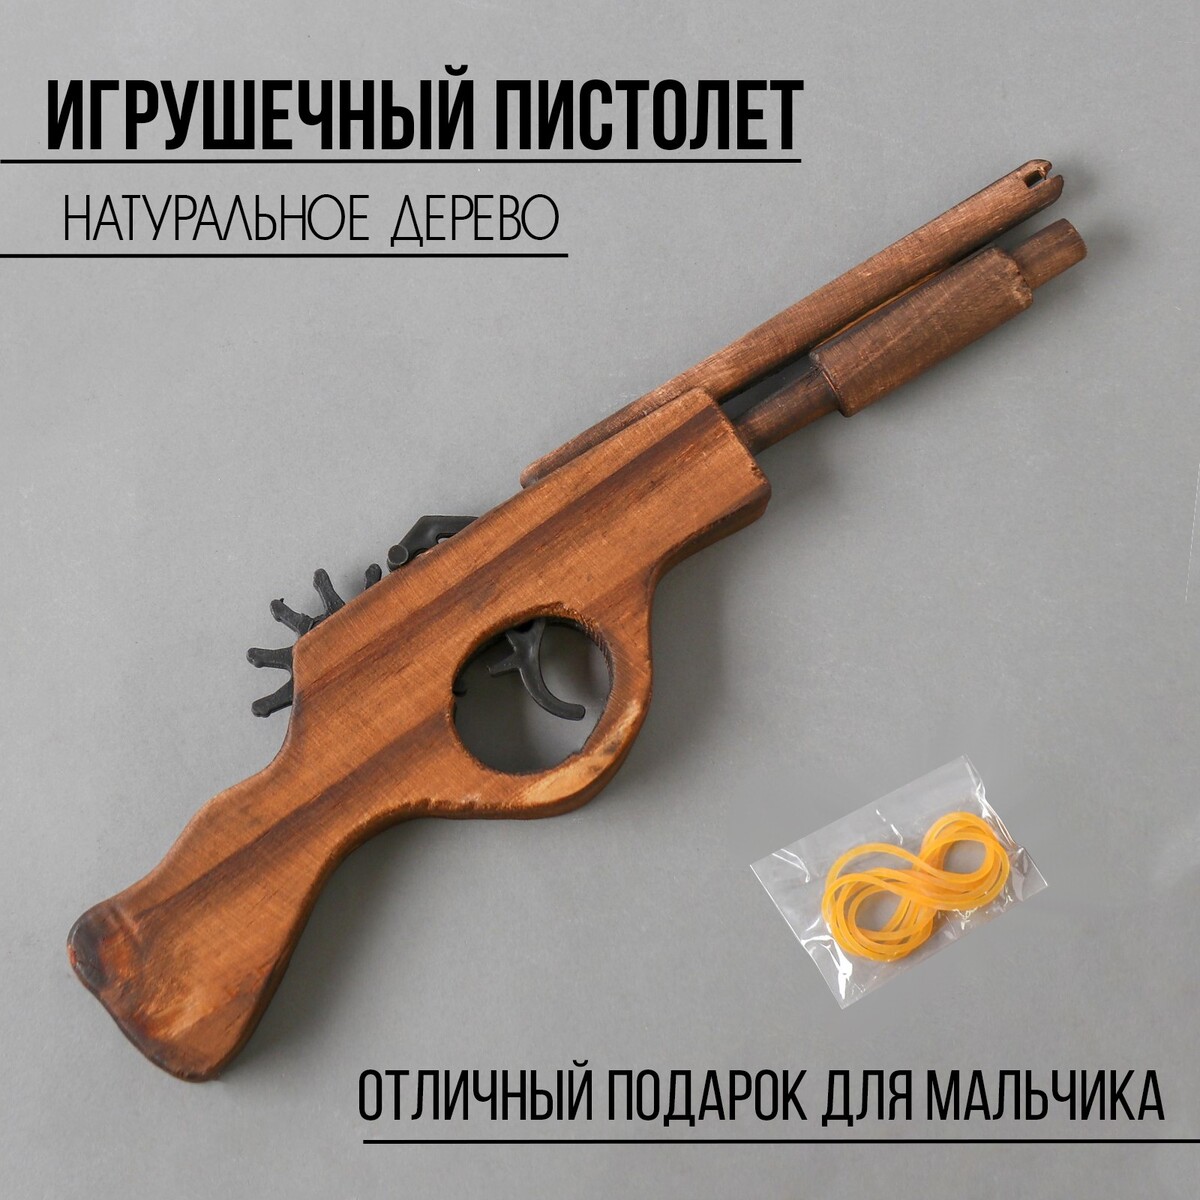 Игрушка деревянная стреляет резинками деревянная игрушка lemmo конструктор пистолет резинкострел бластер